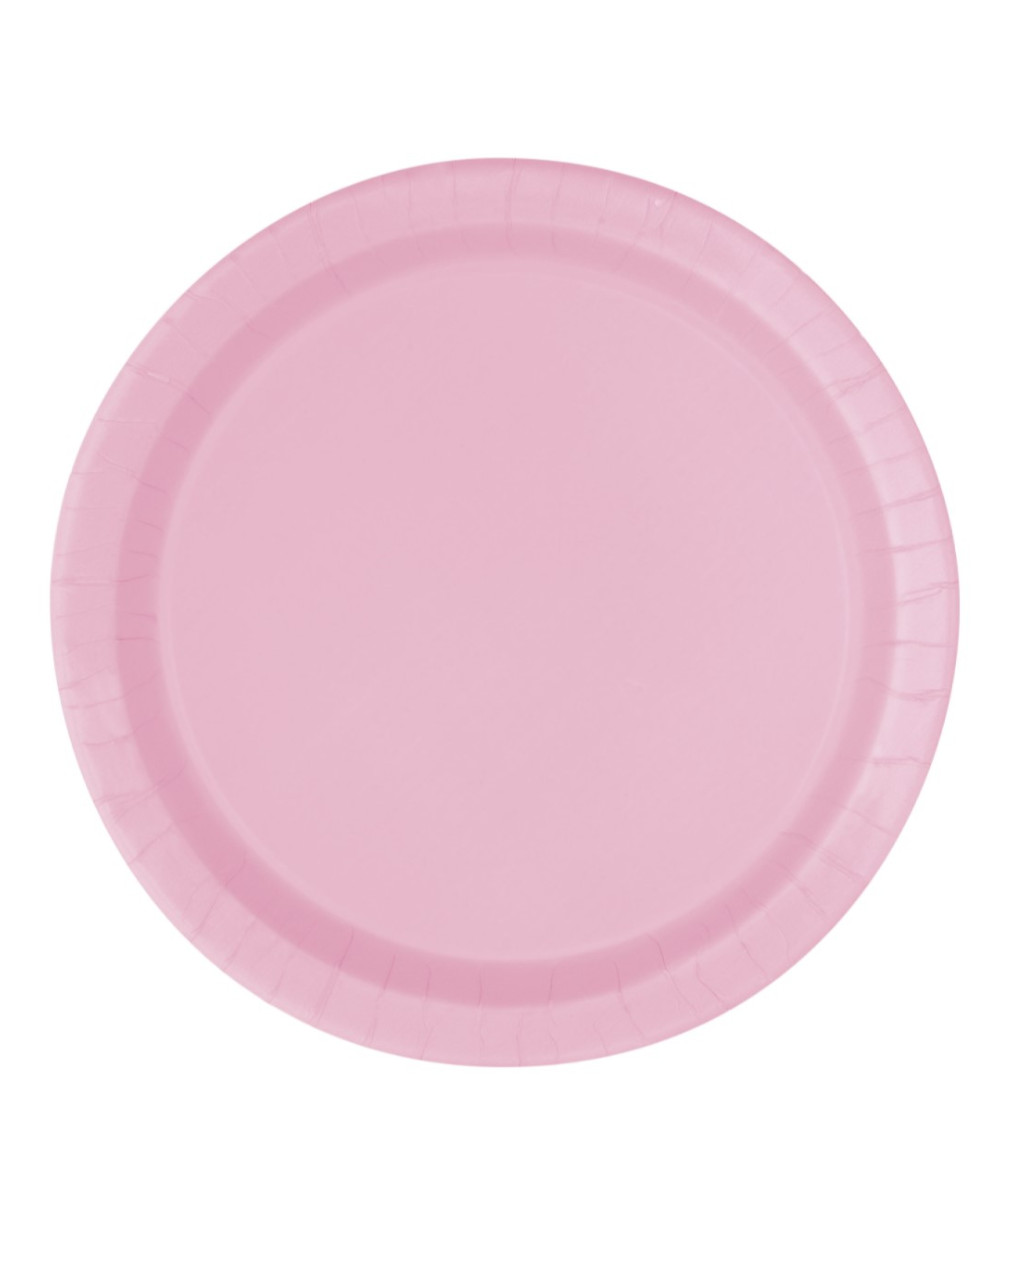 Piatto carta 23 cm - 16 pezzi - rosa pastello - Bigiemme